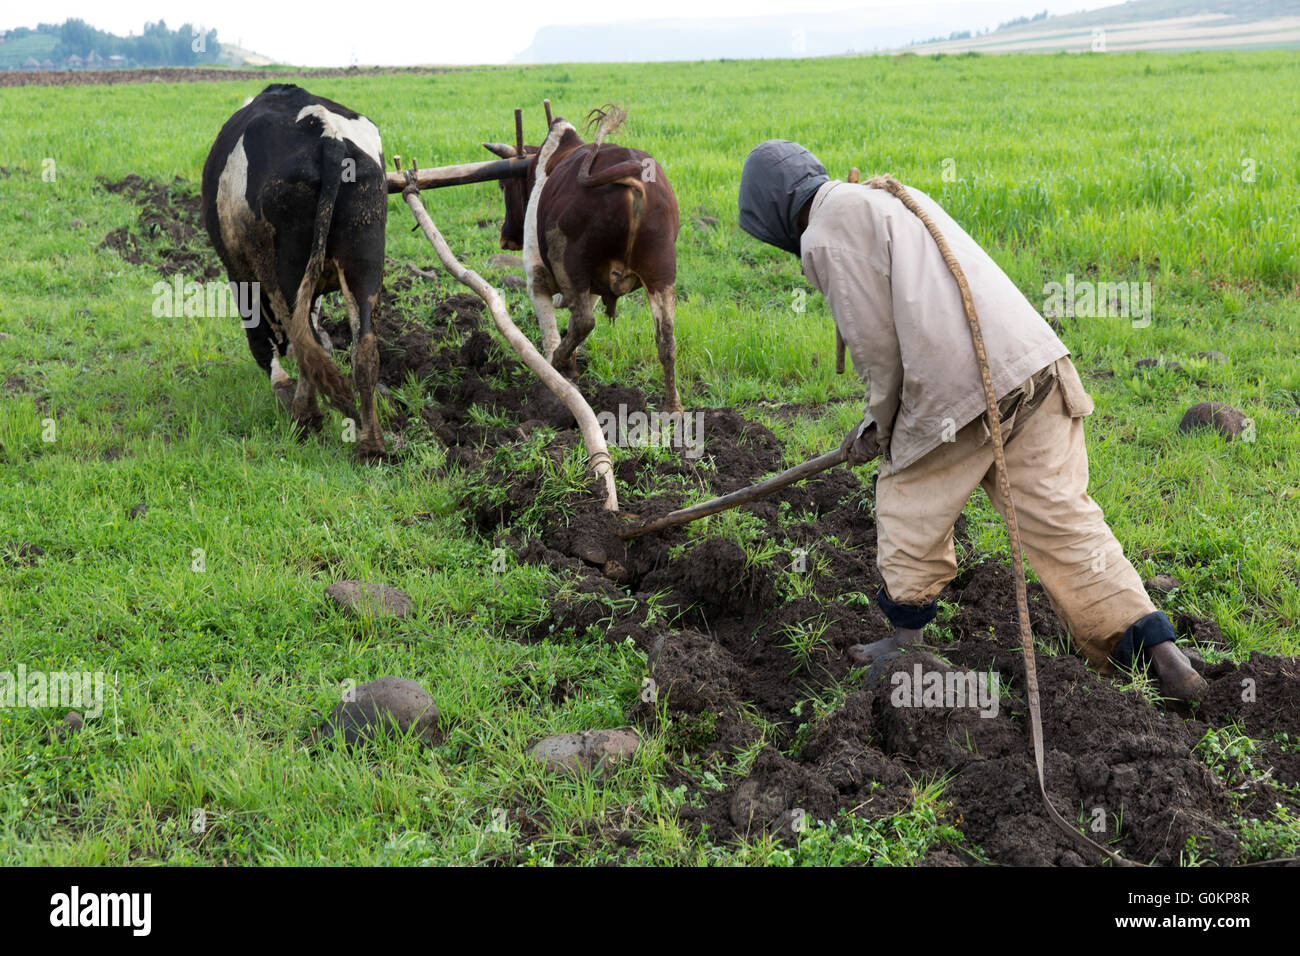 Debre Birhan, Amhara, Ethiopie, octobre 2013 Etachew Tadesse, 25, labourer leur champ. Leur planteront guaya, un lagume. Photographie par Mike Goldwater Banque D'Images